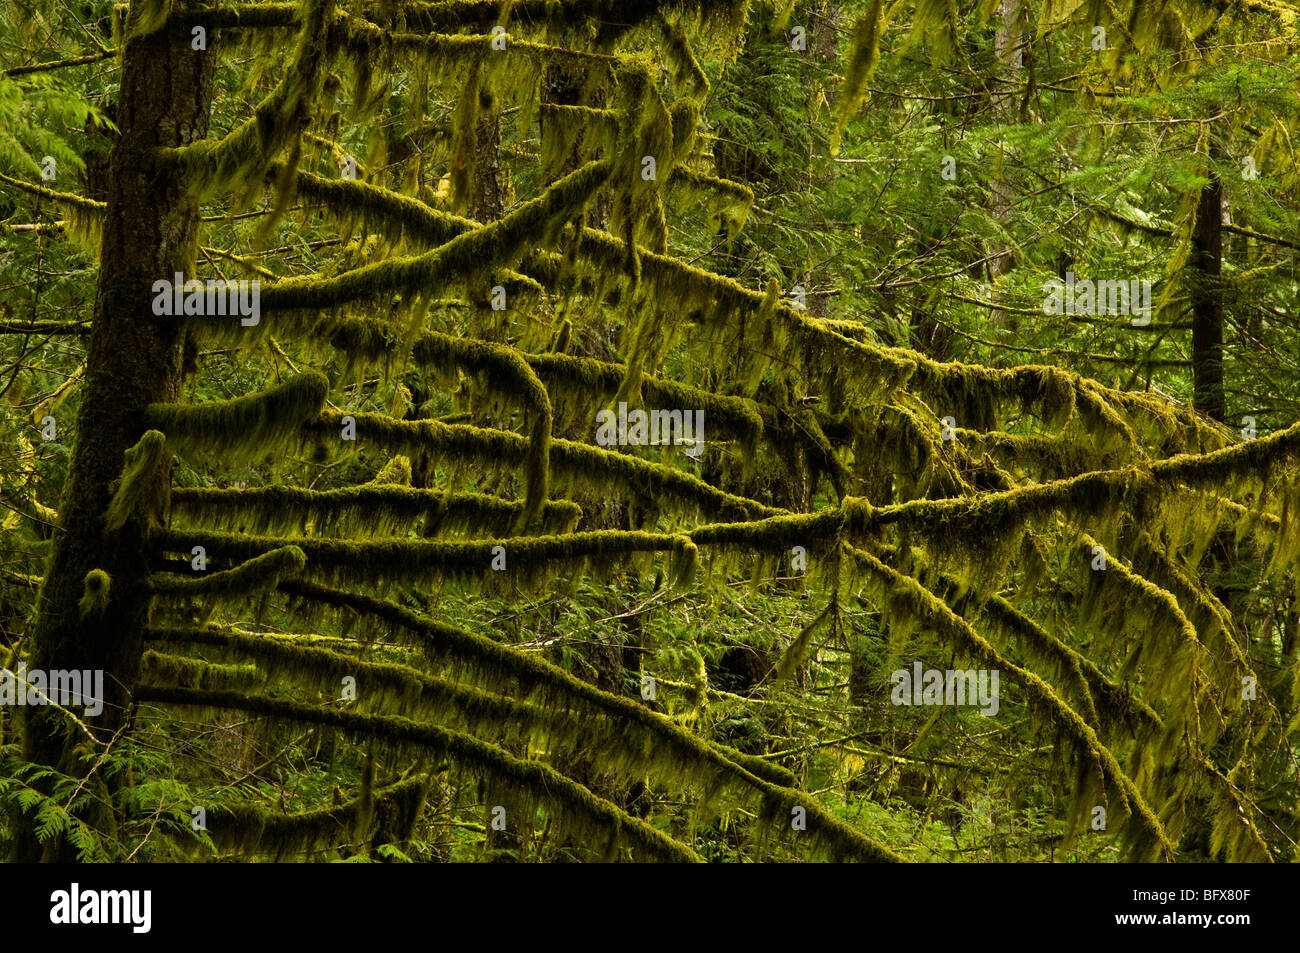 Los musgos epífitos sobre troncos y ramas de árboles de cedro, Langford, BC, British Columbia, Canadá Foto de stock